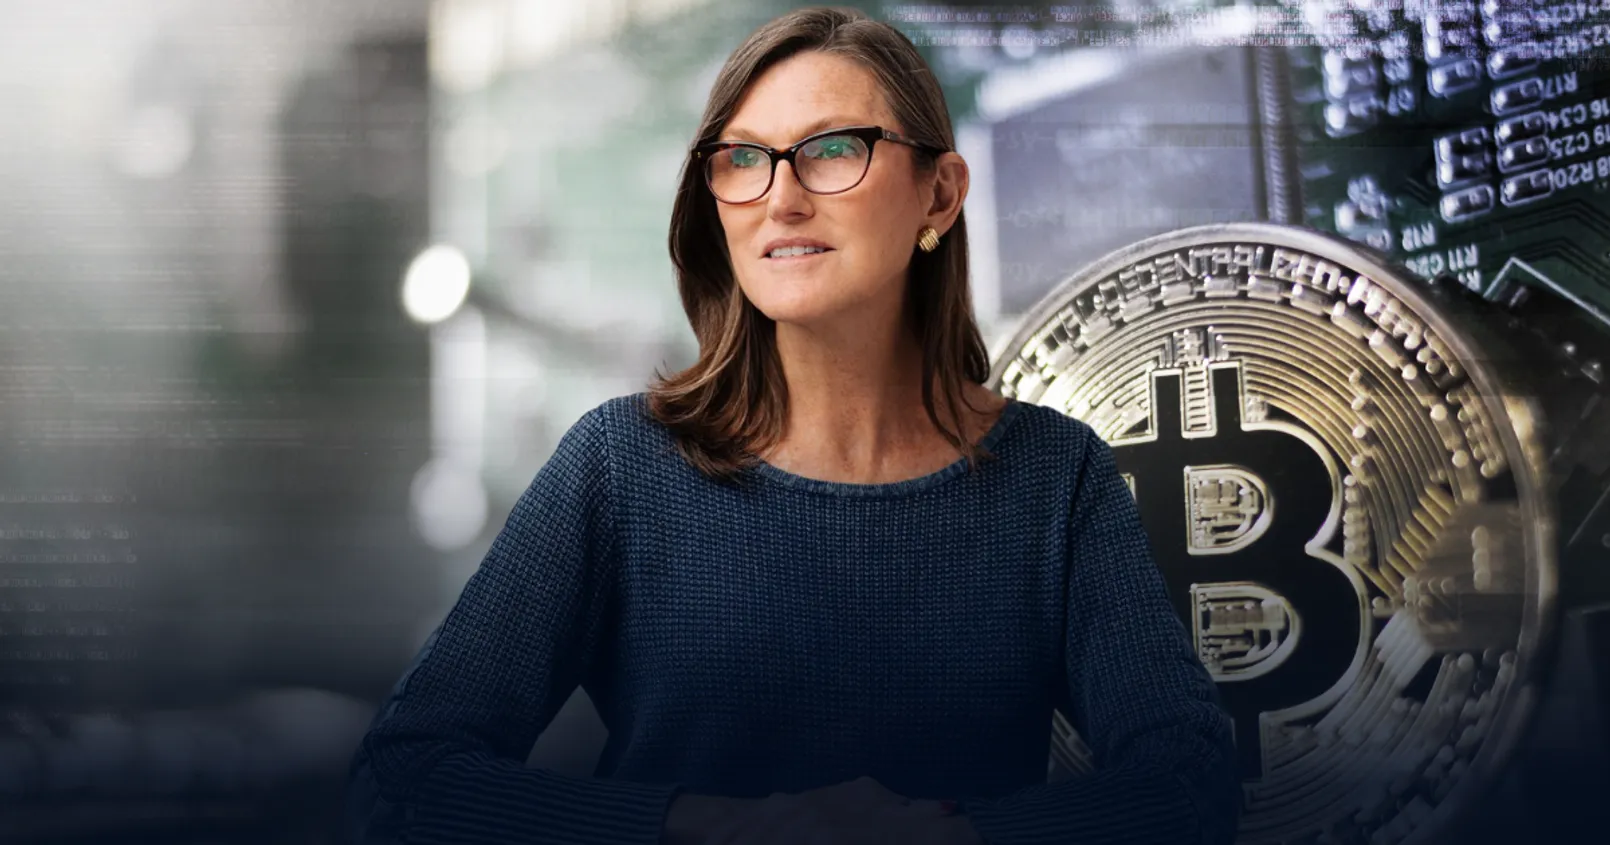 'Cathie Wood' ซีอีโอของ 'ARK Invest' ยืนยันยังมั่นใจใน Bitcoin